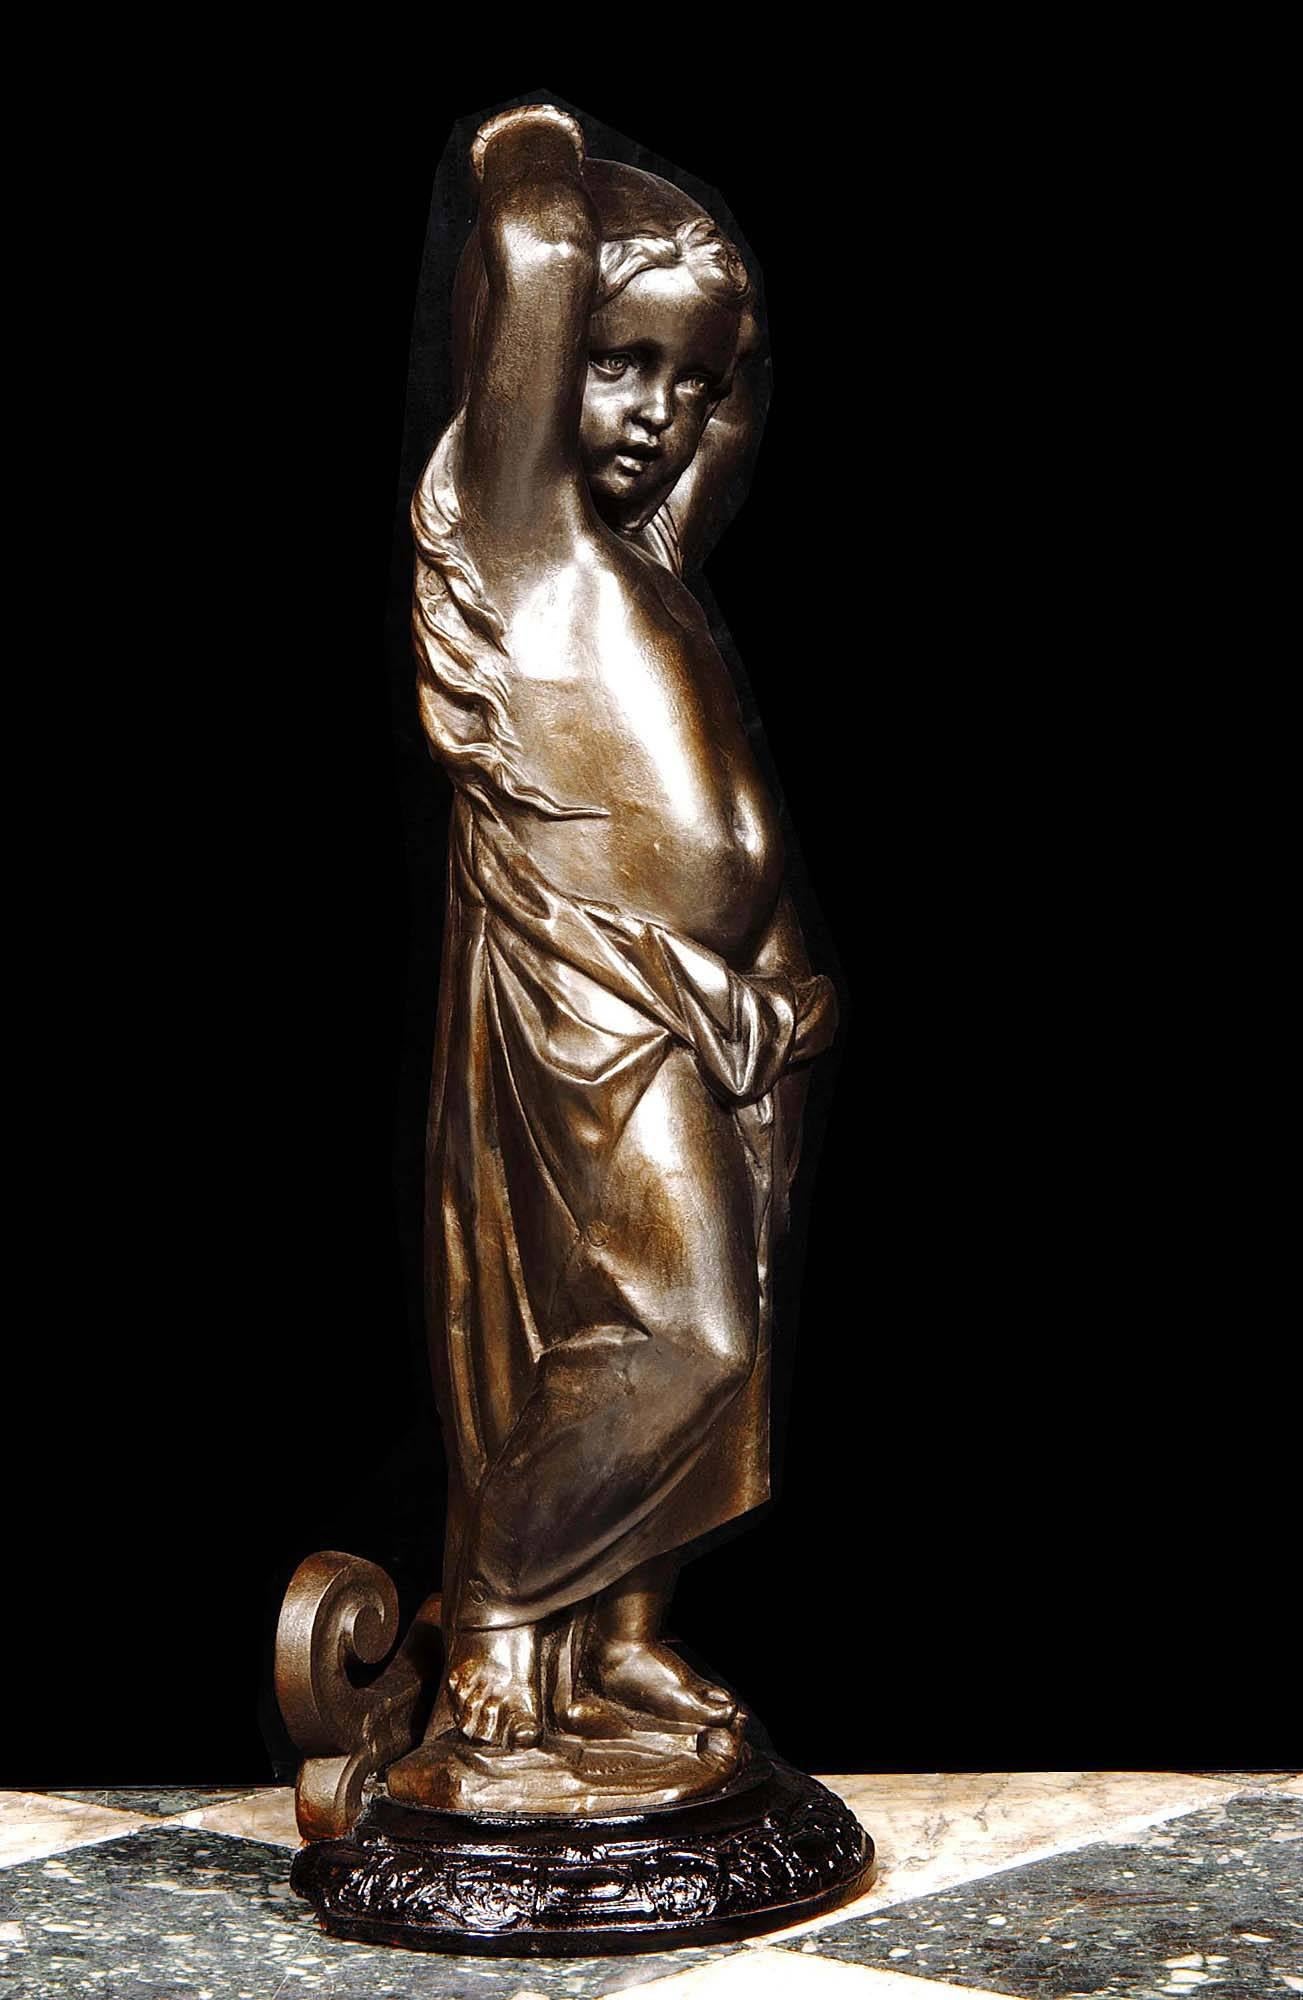 Une très jolie figurine de style baroque en bronze patiné représentant une petite fille qui rappelle l'illustration d'Emile Bayard de l'enfant Cosette dans 